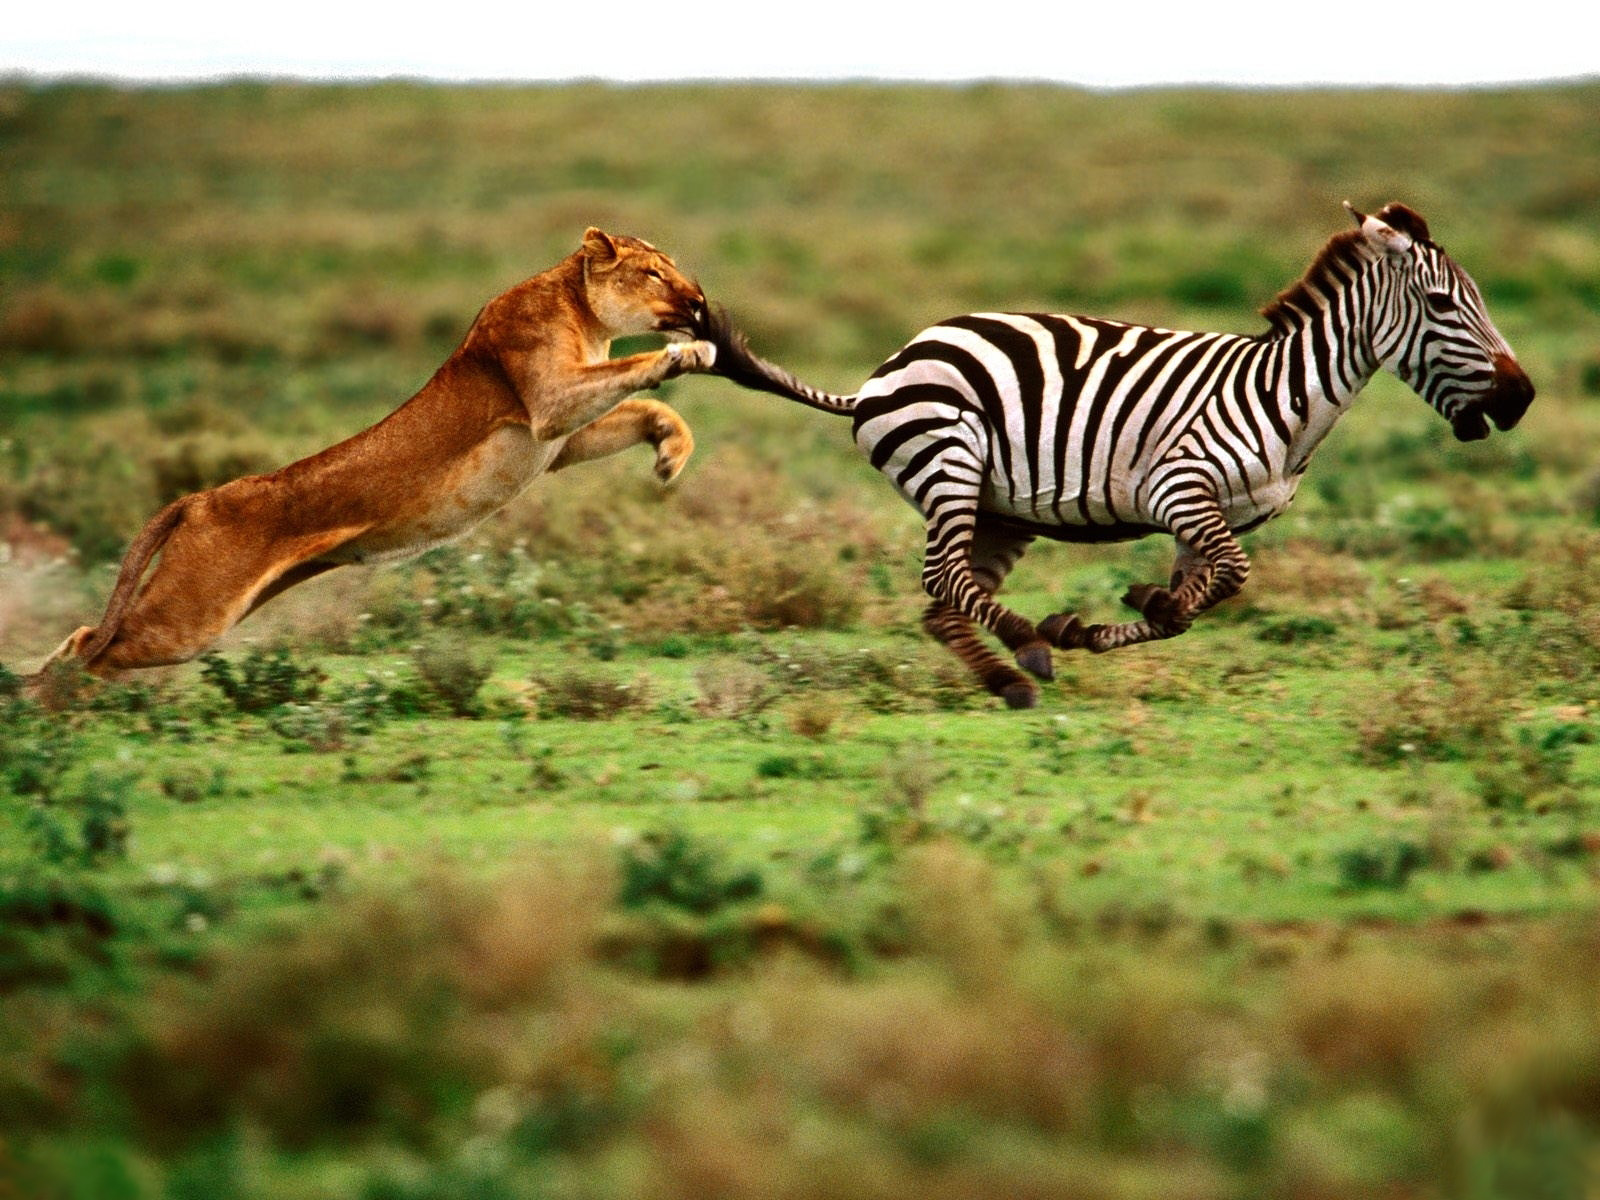 Lion Running After Zebra - HD Wallpaper 